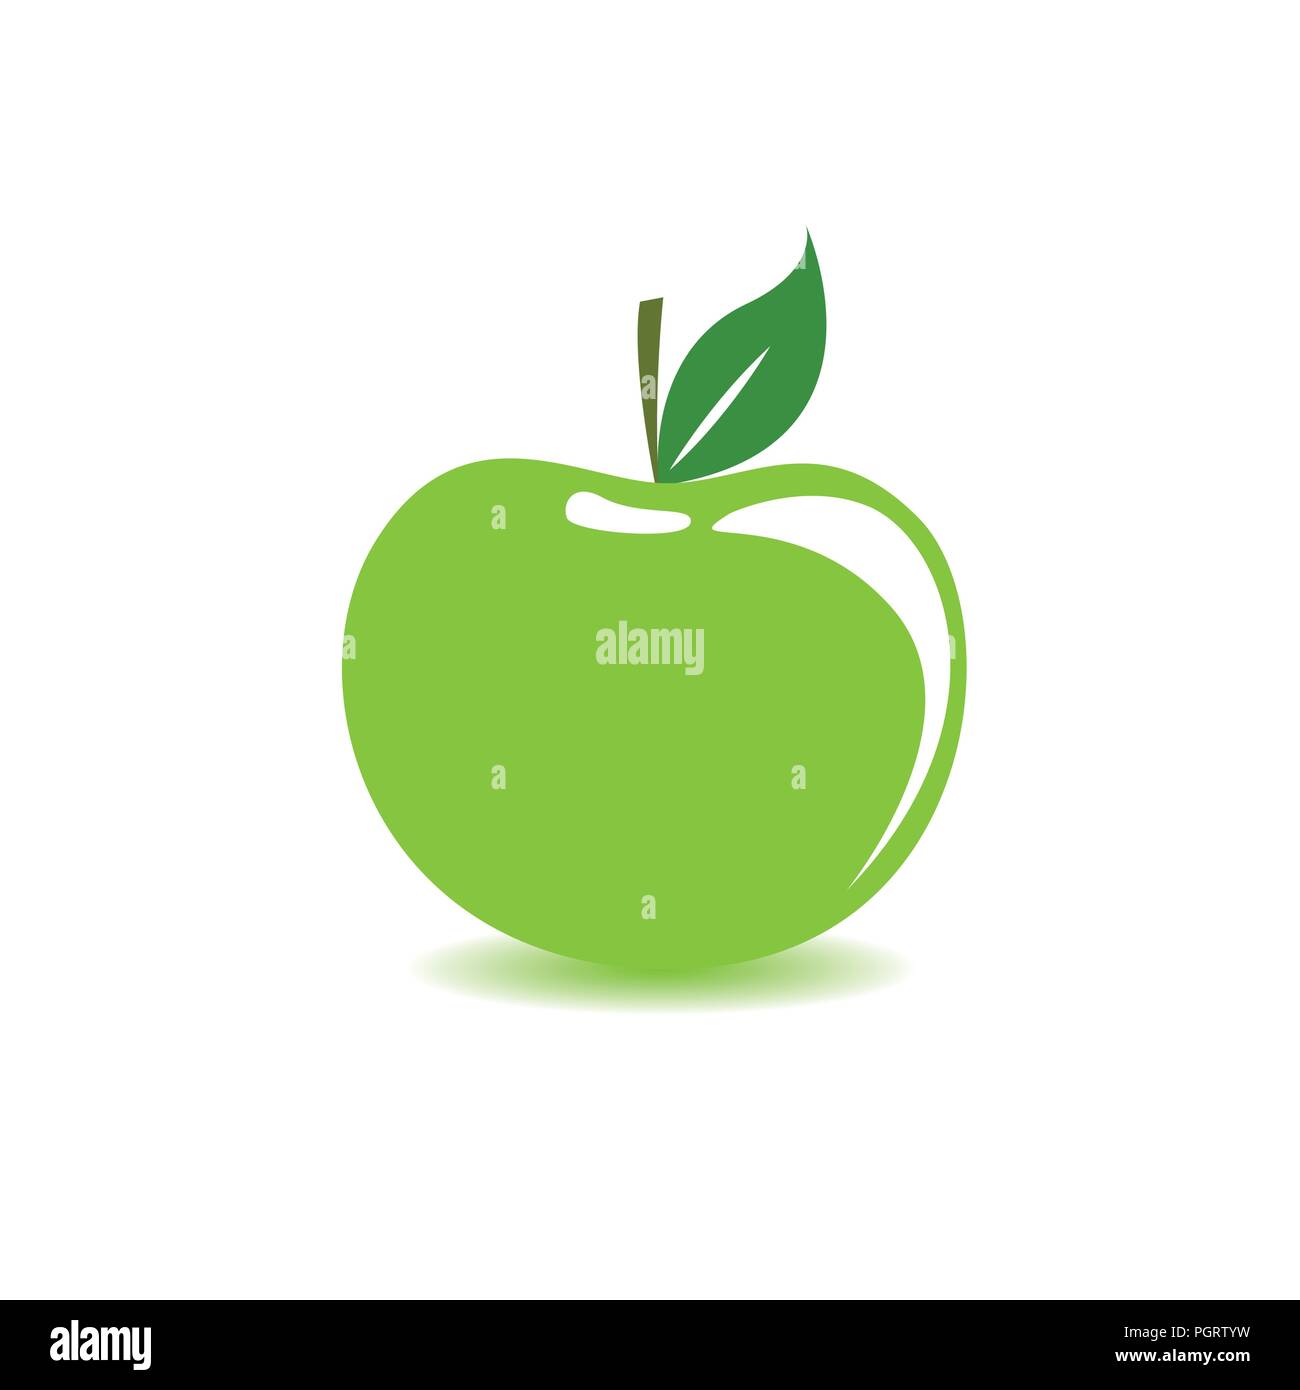 green apple on white background vector illustration EPS10 Stock Vector